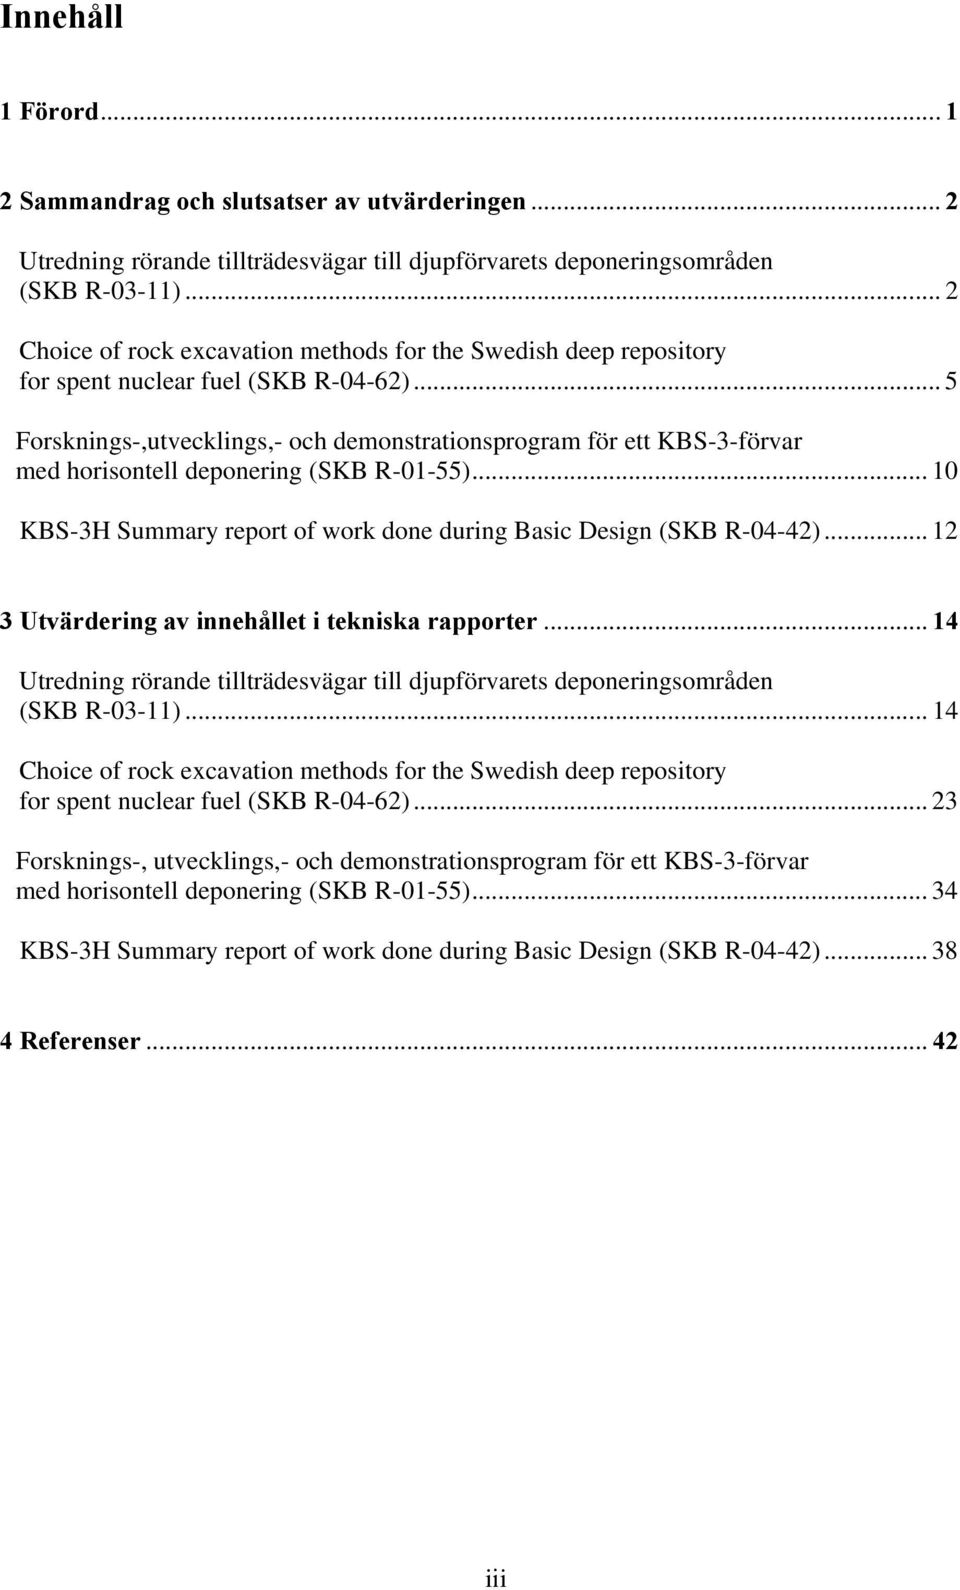 .. 5 Forsknings-,utvecklings,- och demonstrationsprogram för ett KBS-3-förvar med horisontell deponering (SKB R-01-55)... 10 KBS-3H Summary report of work done during Basic Design (SKB R-04-42).